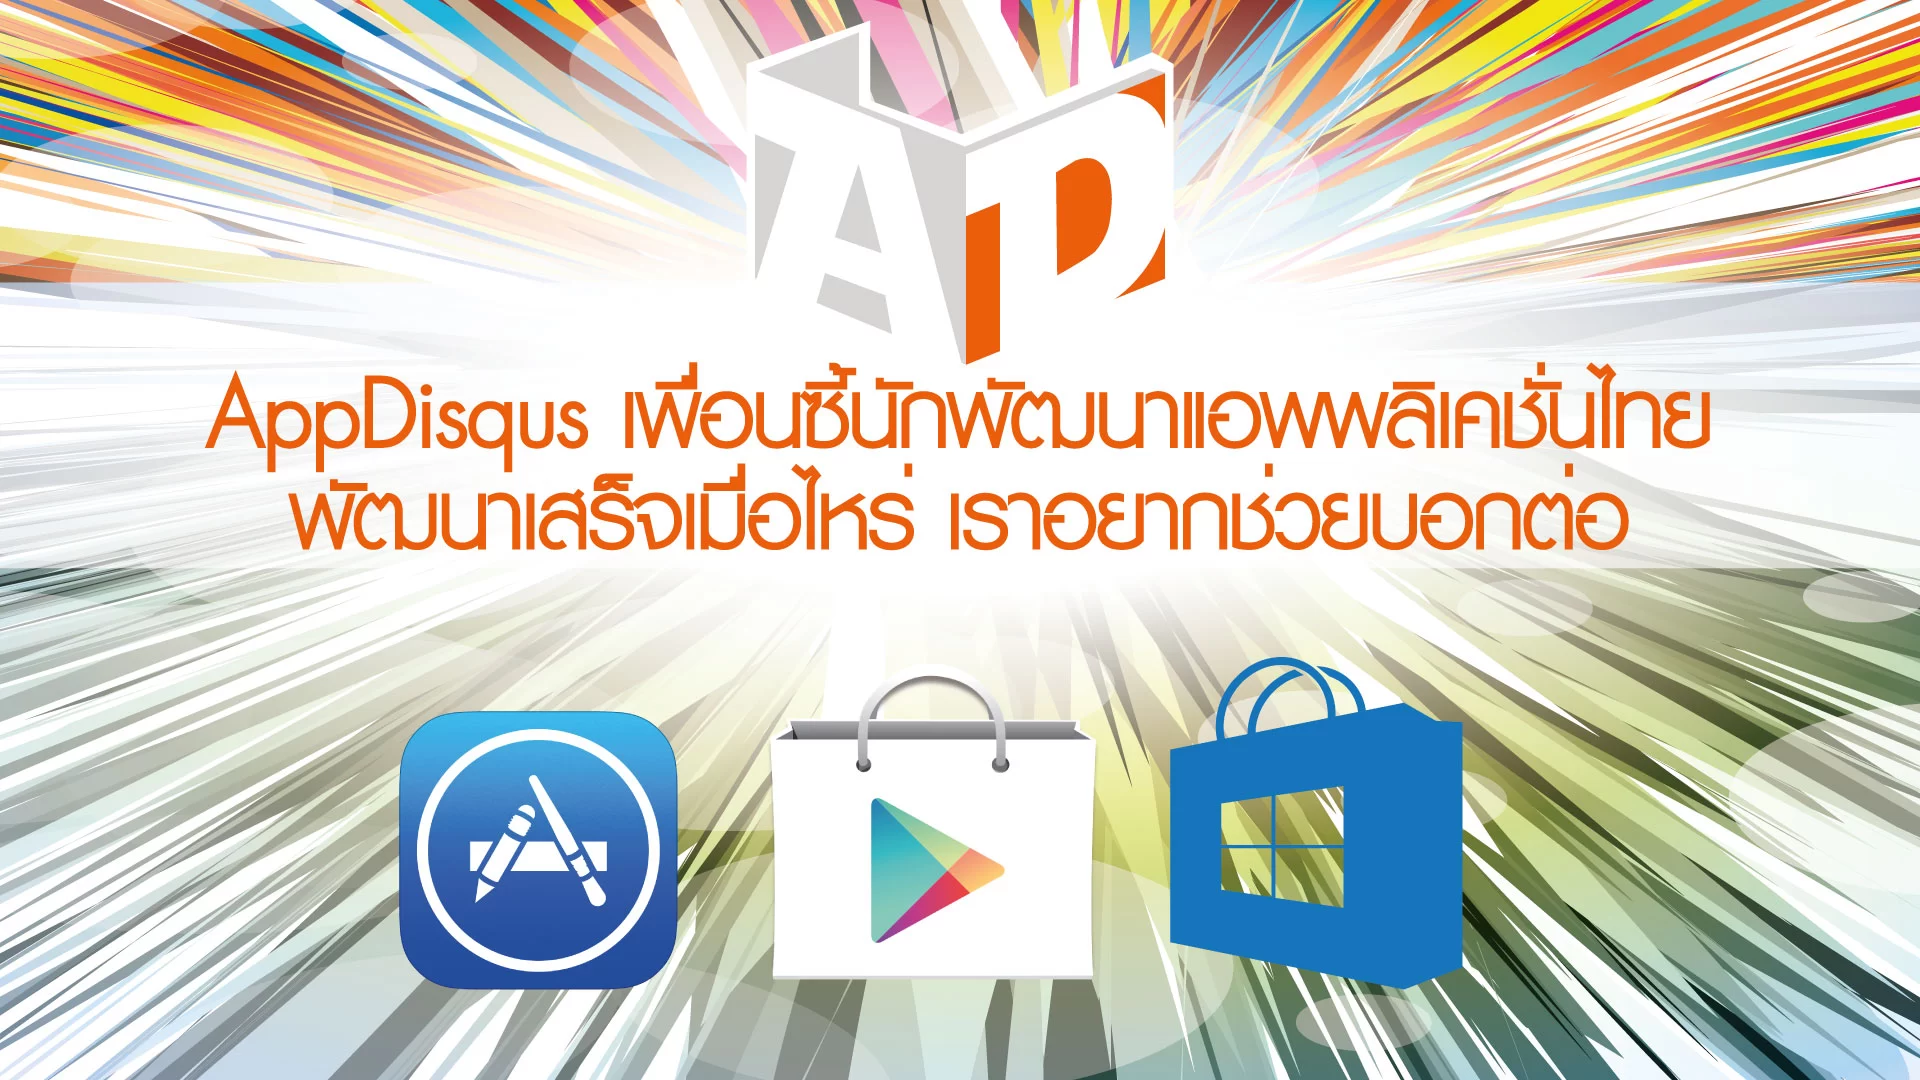 Appdisqus เพื่อนซี้ 01 824571 | stayfocus | Appdisqus เพื่อนซื้นักพัฒนาแอพไทย สนับสนุนแอพผลงานชาวไทย ส่งข้อมูลให้เรากระจายข่าวประชาสัมพันธ์ได้ตั้งแต่วันนี้